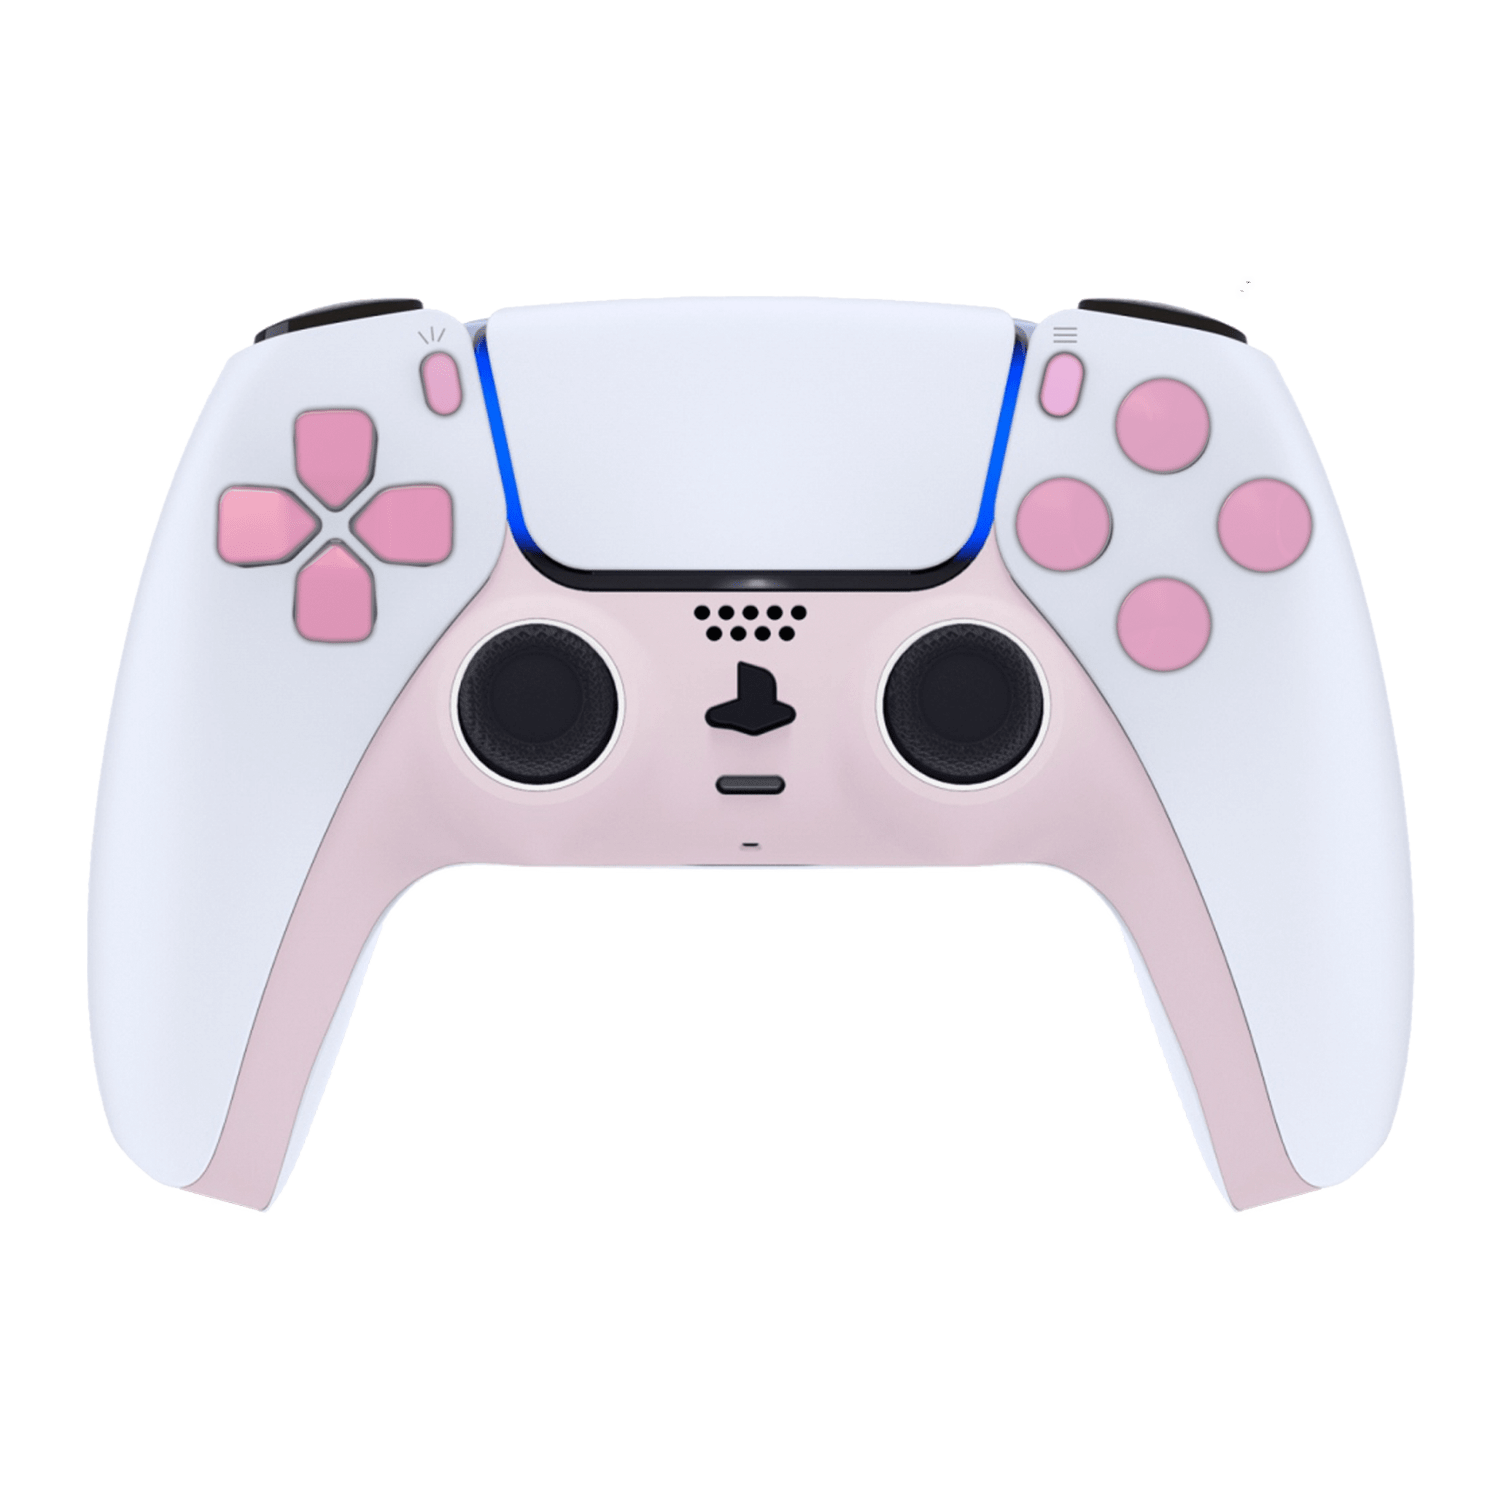 PlayStation-5-DualSense-PS5-Custom-Controller-Pink-Edition_09f7e582-6f3d-47fb-8d9f-d30affbd9779